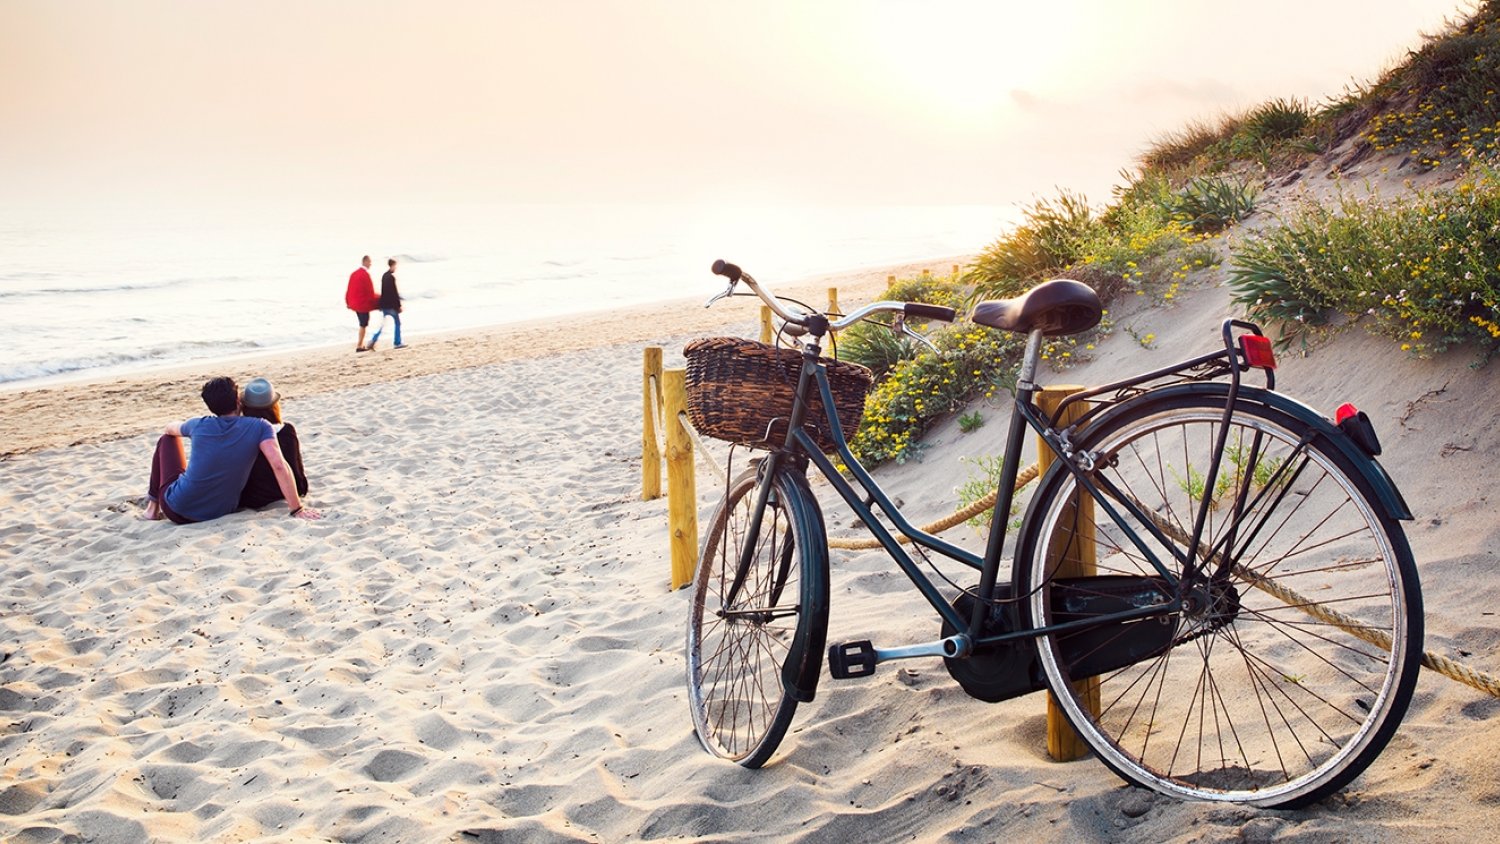 El sol, la playa y la gastronomía principales motivaciones de los turistas que visitan la Costa del Sol